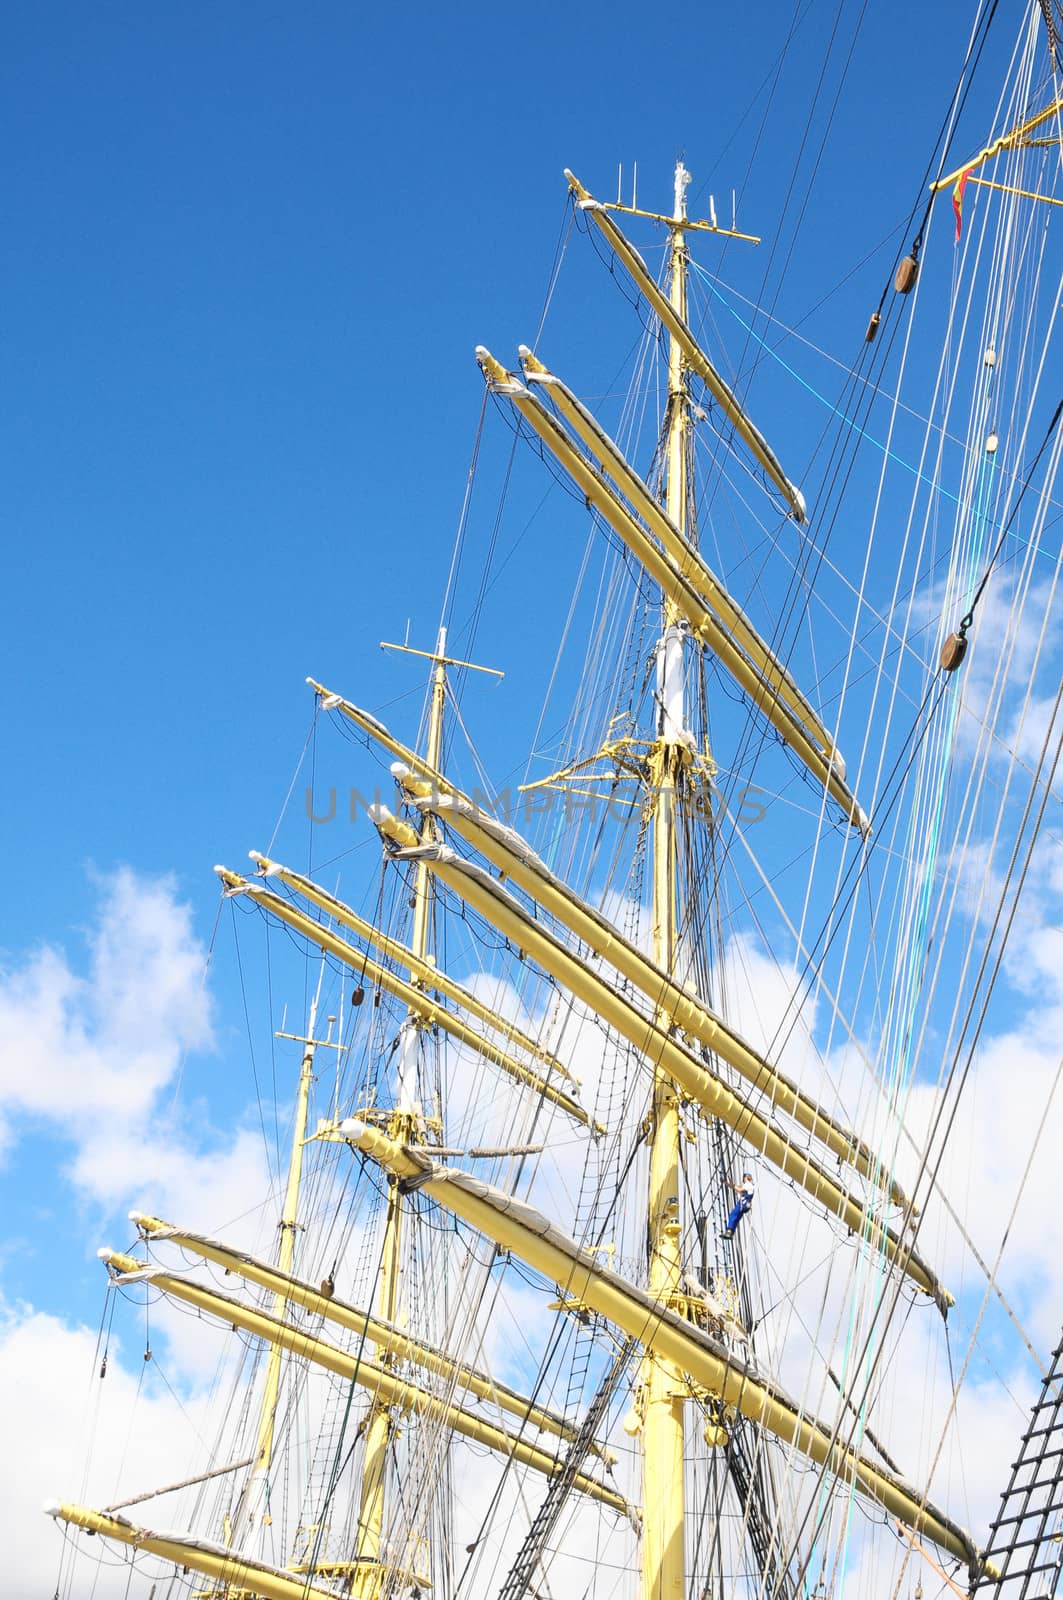 Crane masts of a vey big sailing ship